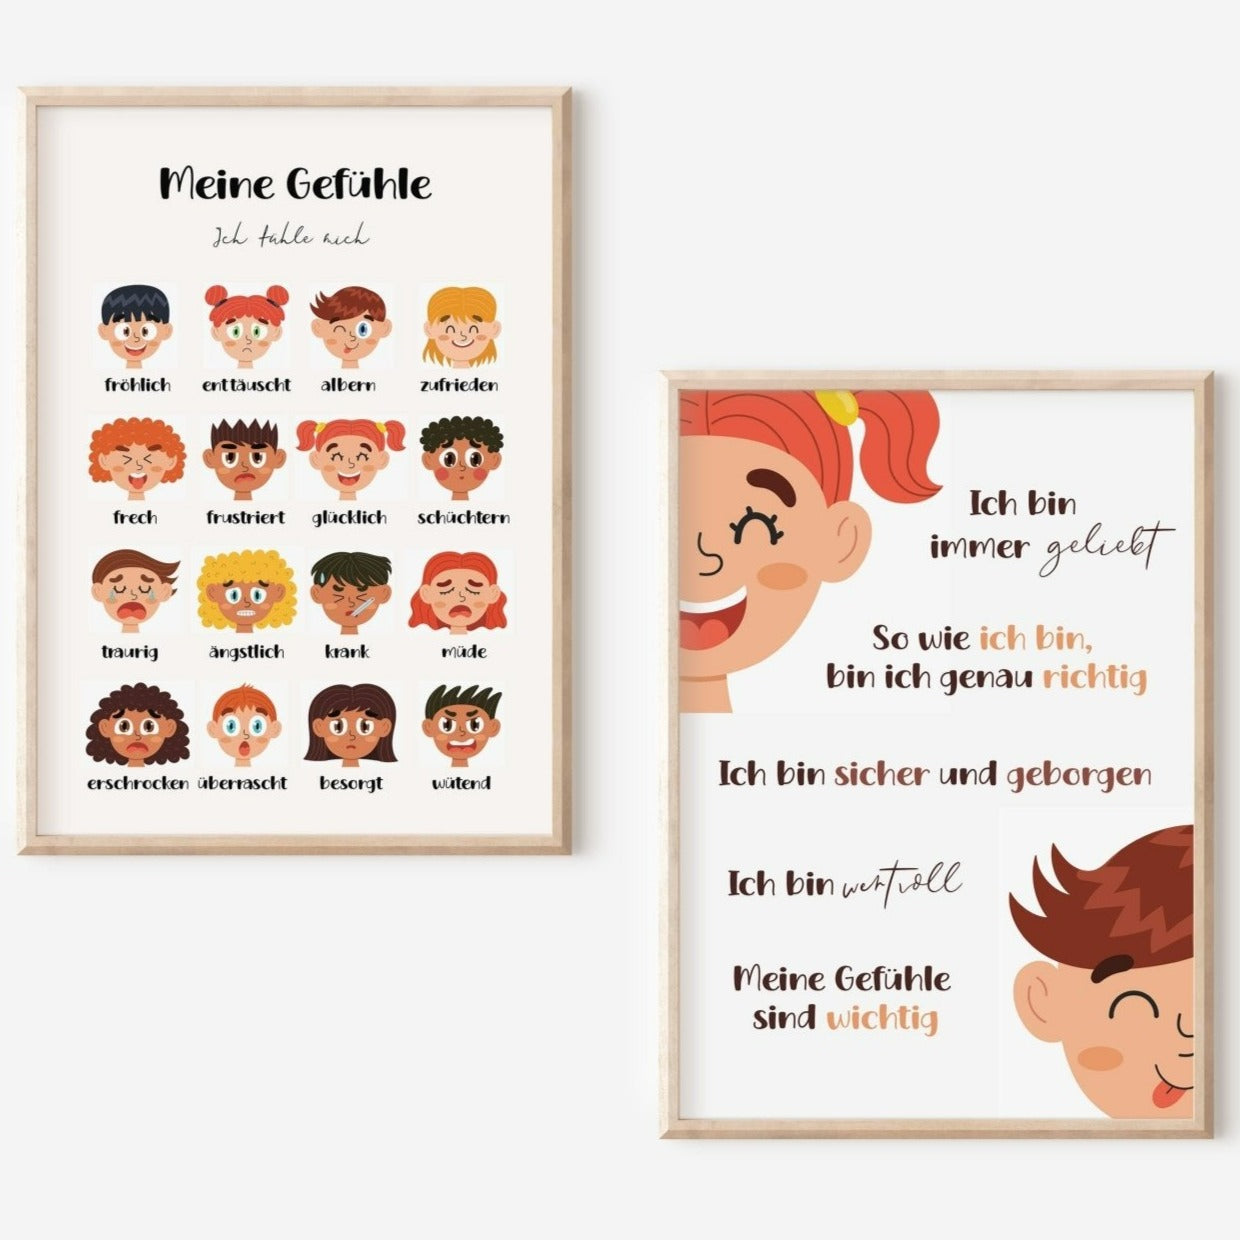 Gefühle Poster Kinder, Emotionen Poster, Kinderzimmer Poster, Gefühle Kinder - HappyLuz Shop